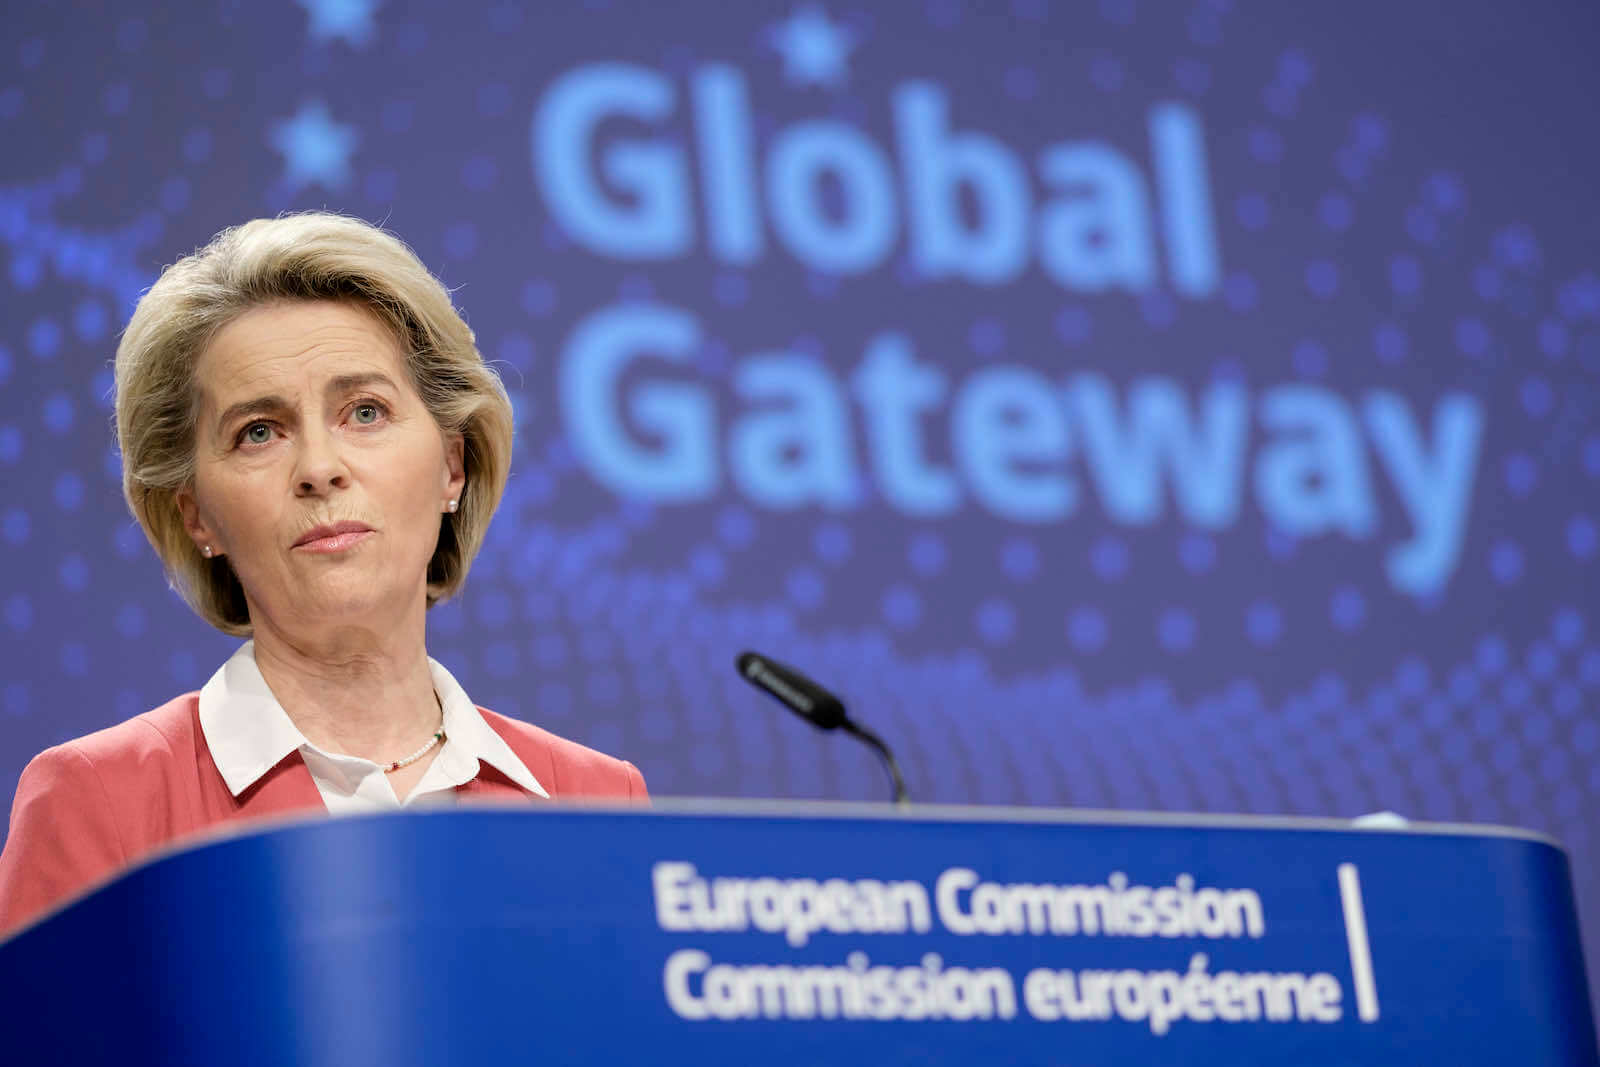 EU Seeks Australia’s Help in Developing Global Gateway, Bloc’s Rival to China’s BRI